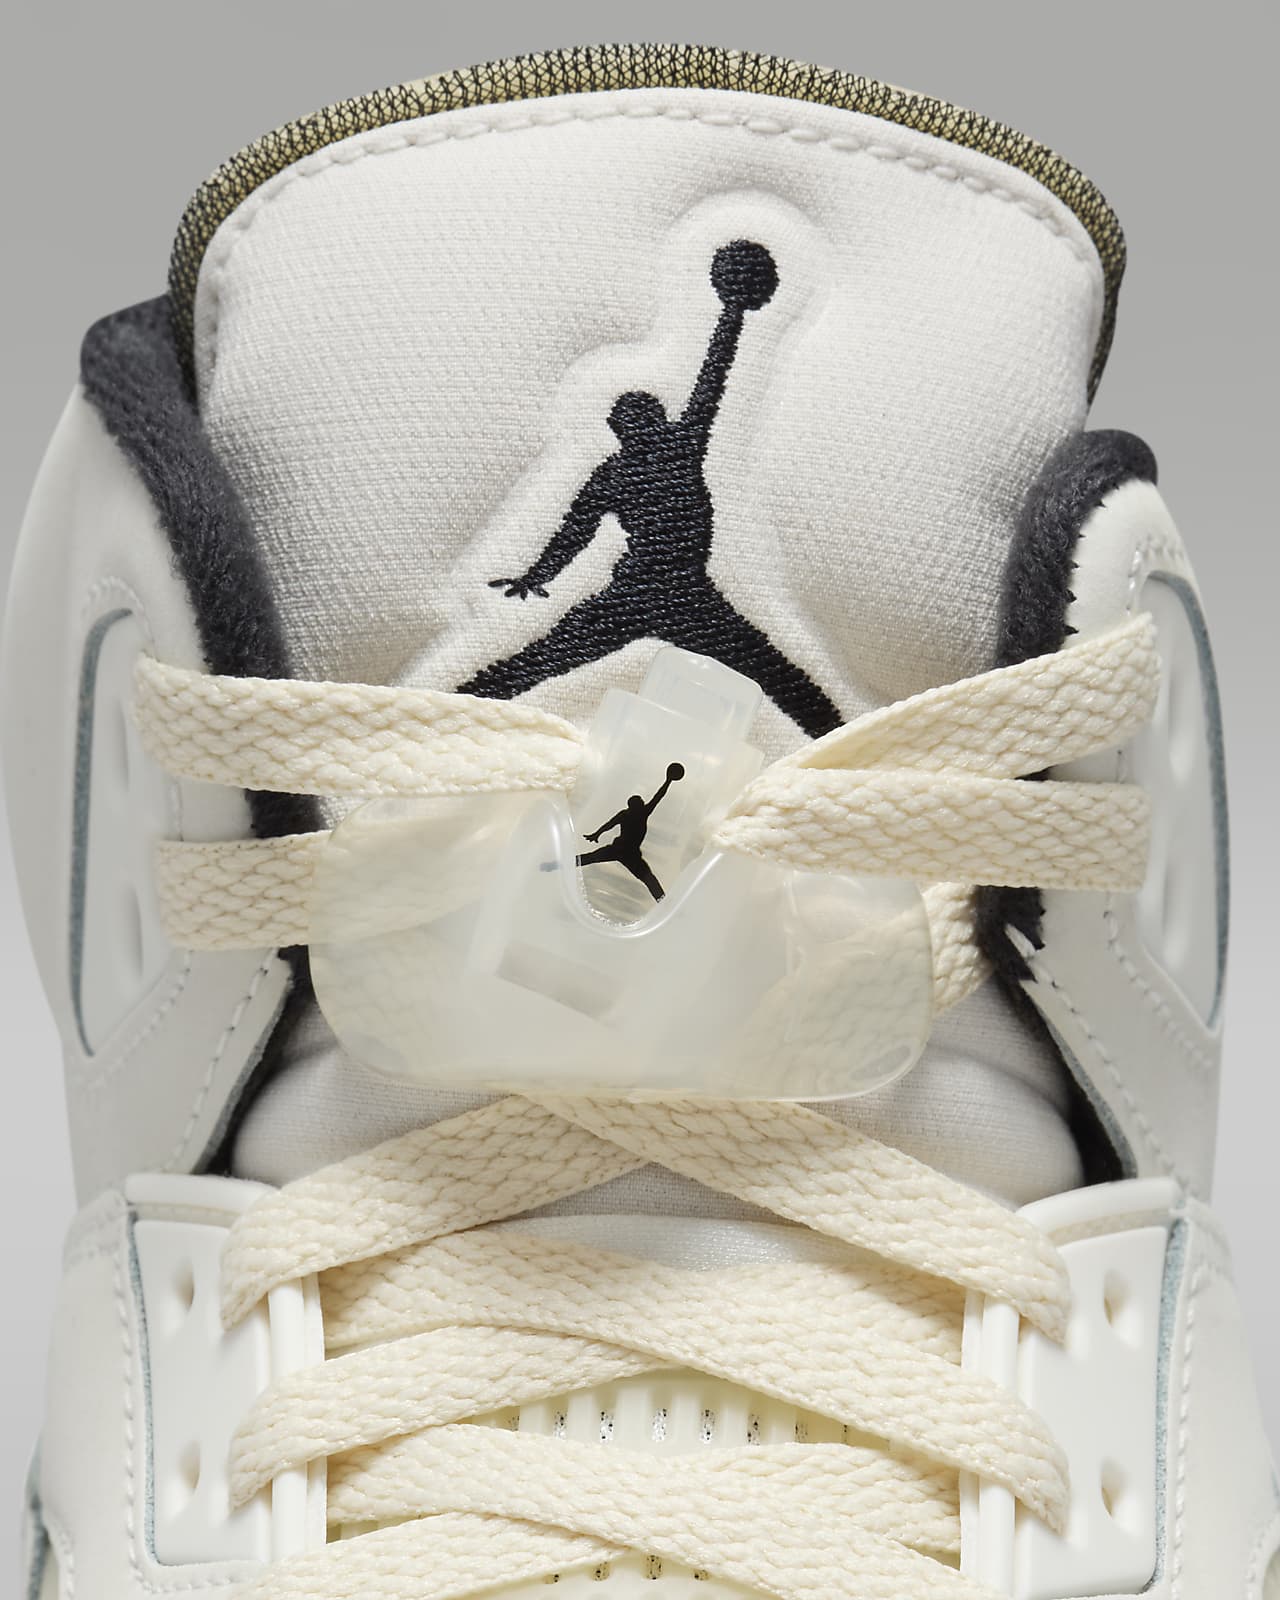 Nike Air Jordan 5 Retro SE本物ですか